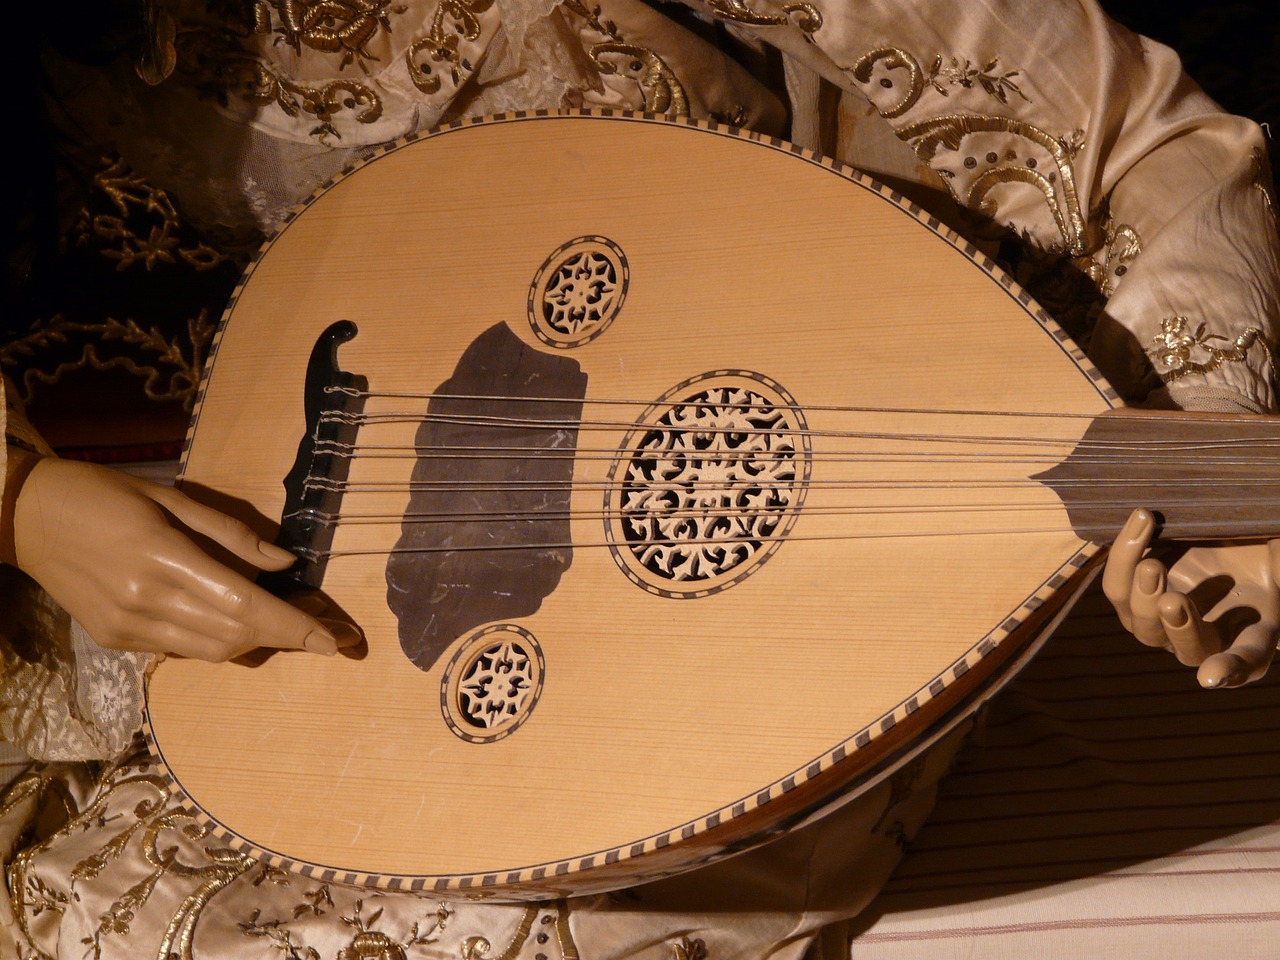 Banjo vs Mandolin - intro image- picture of a mandolin